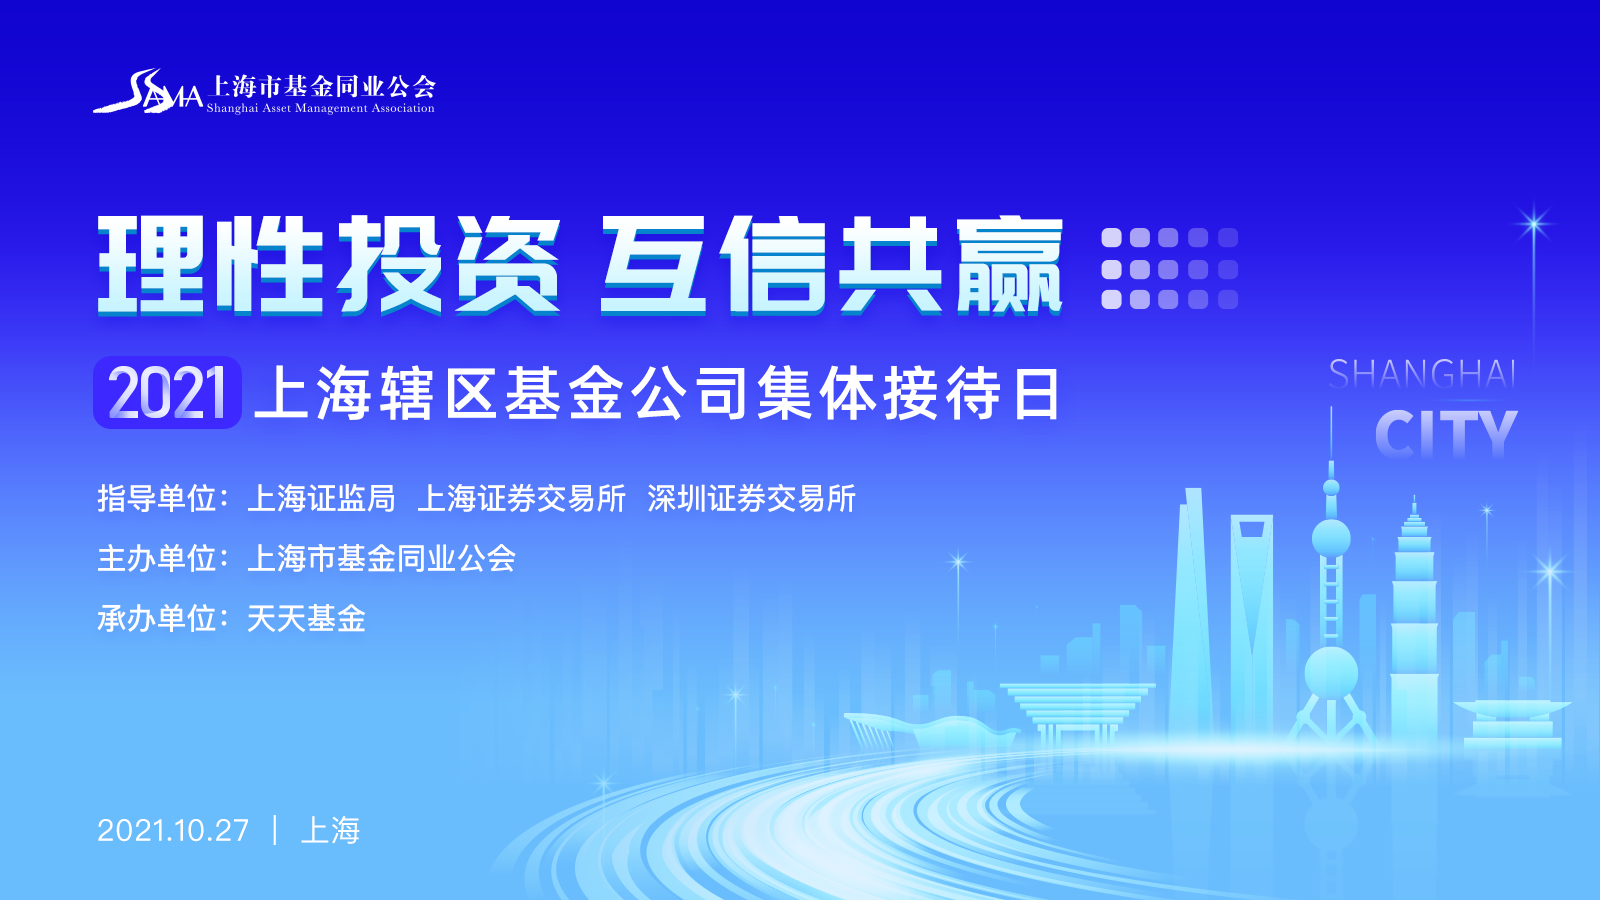 理性投资 互信共赢——2021上海辖区基金公司集体接待日